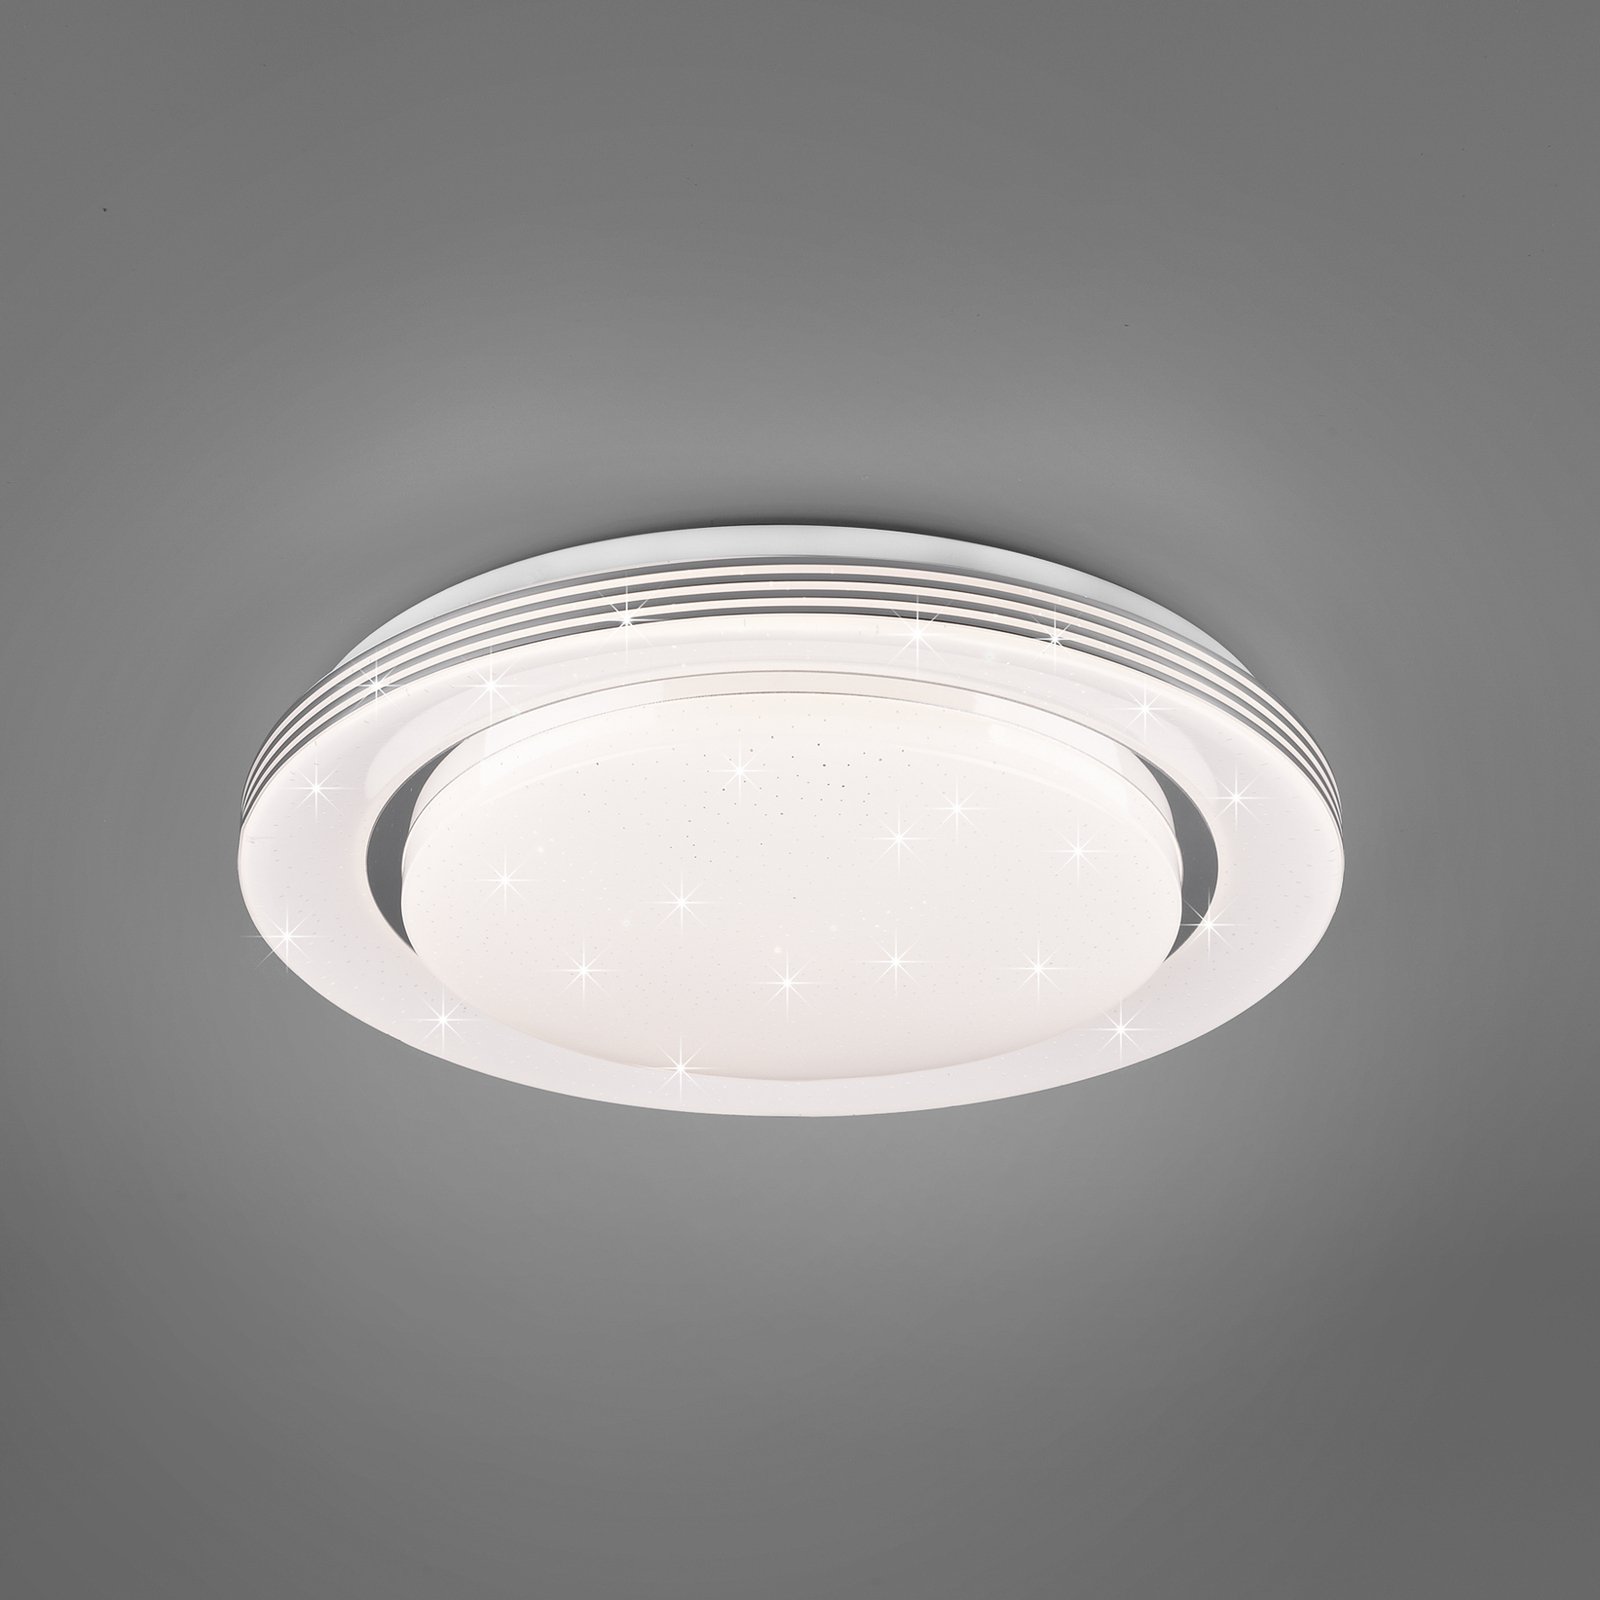 LED lubinis šviestuvas "Atria", Ø 38 cm, baltas, plastikinis, CCT